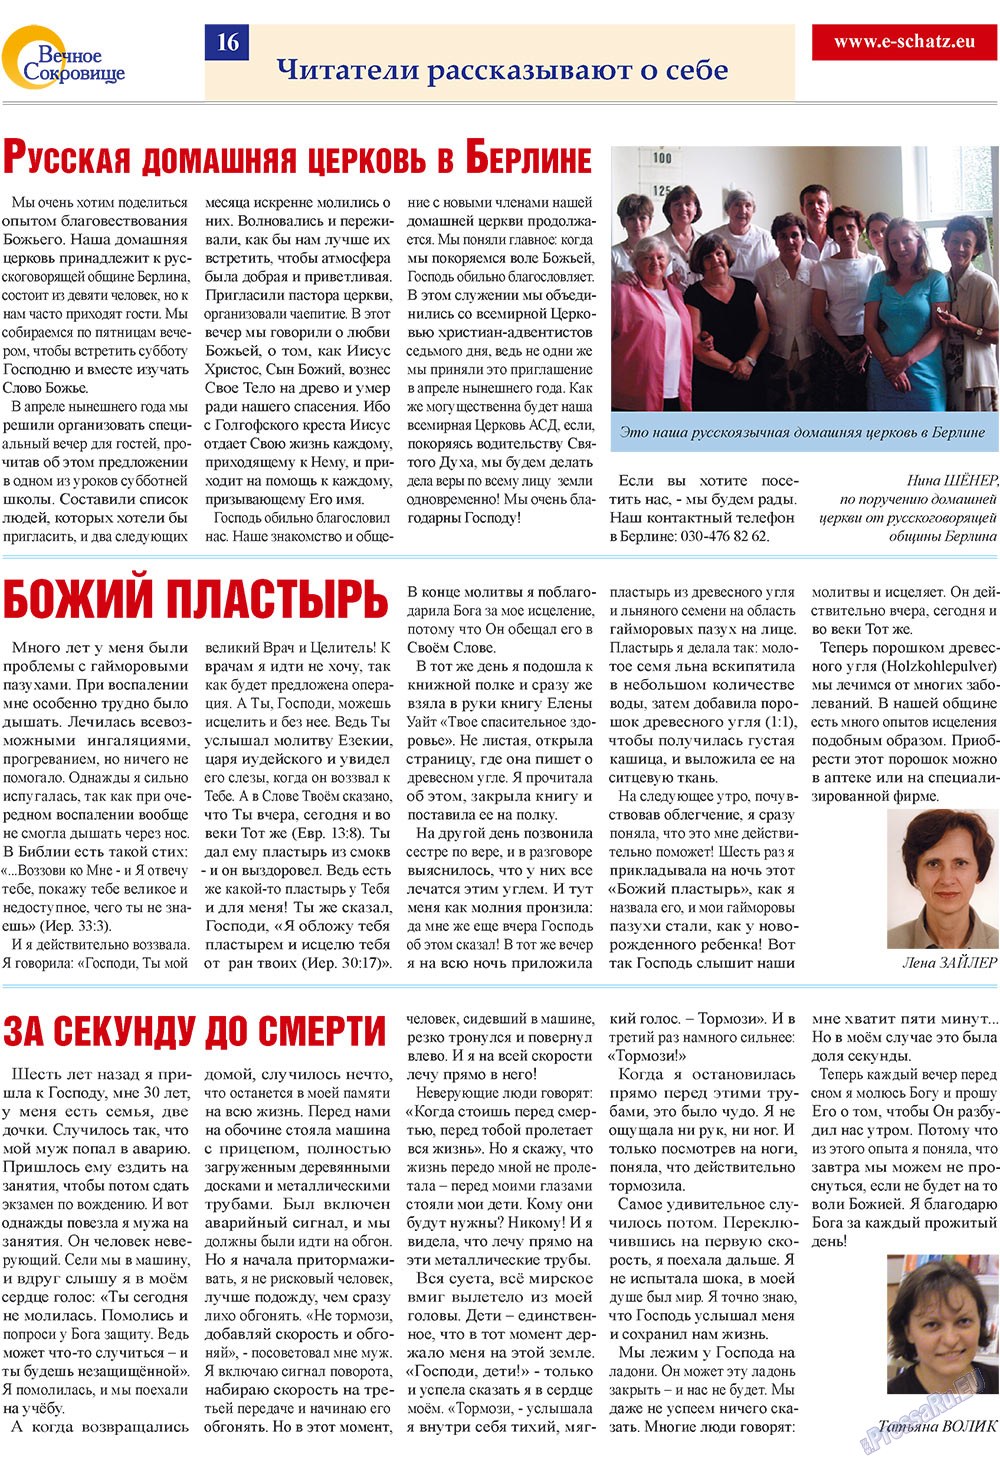 Вечное сокровище (газета). 2009 год, номер 3, стр. 16